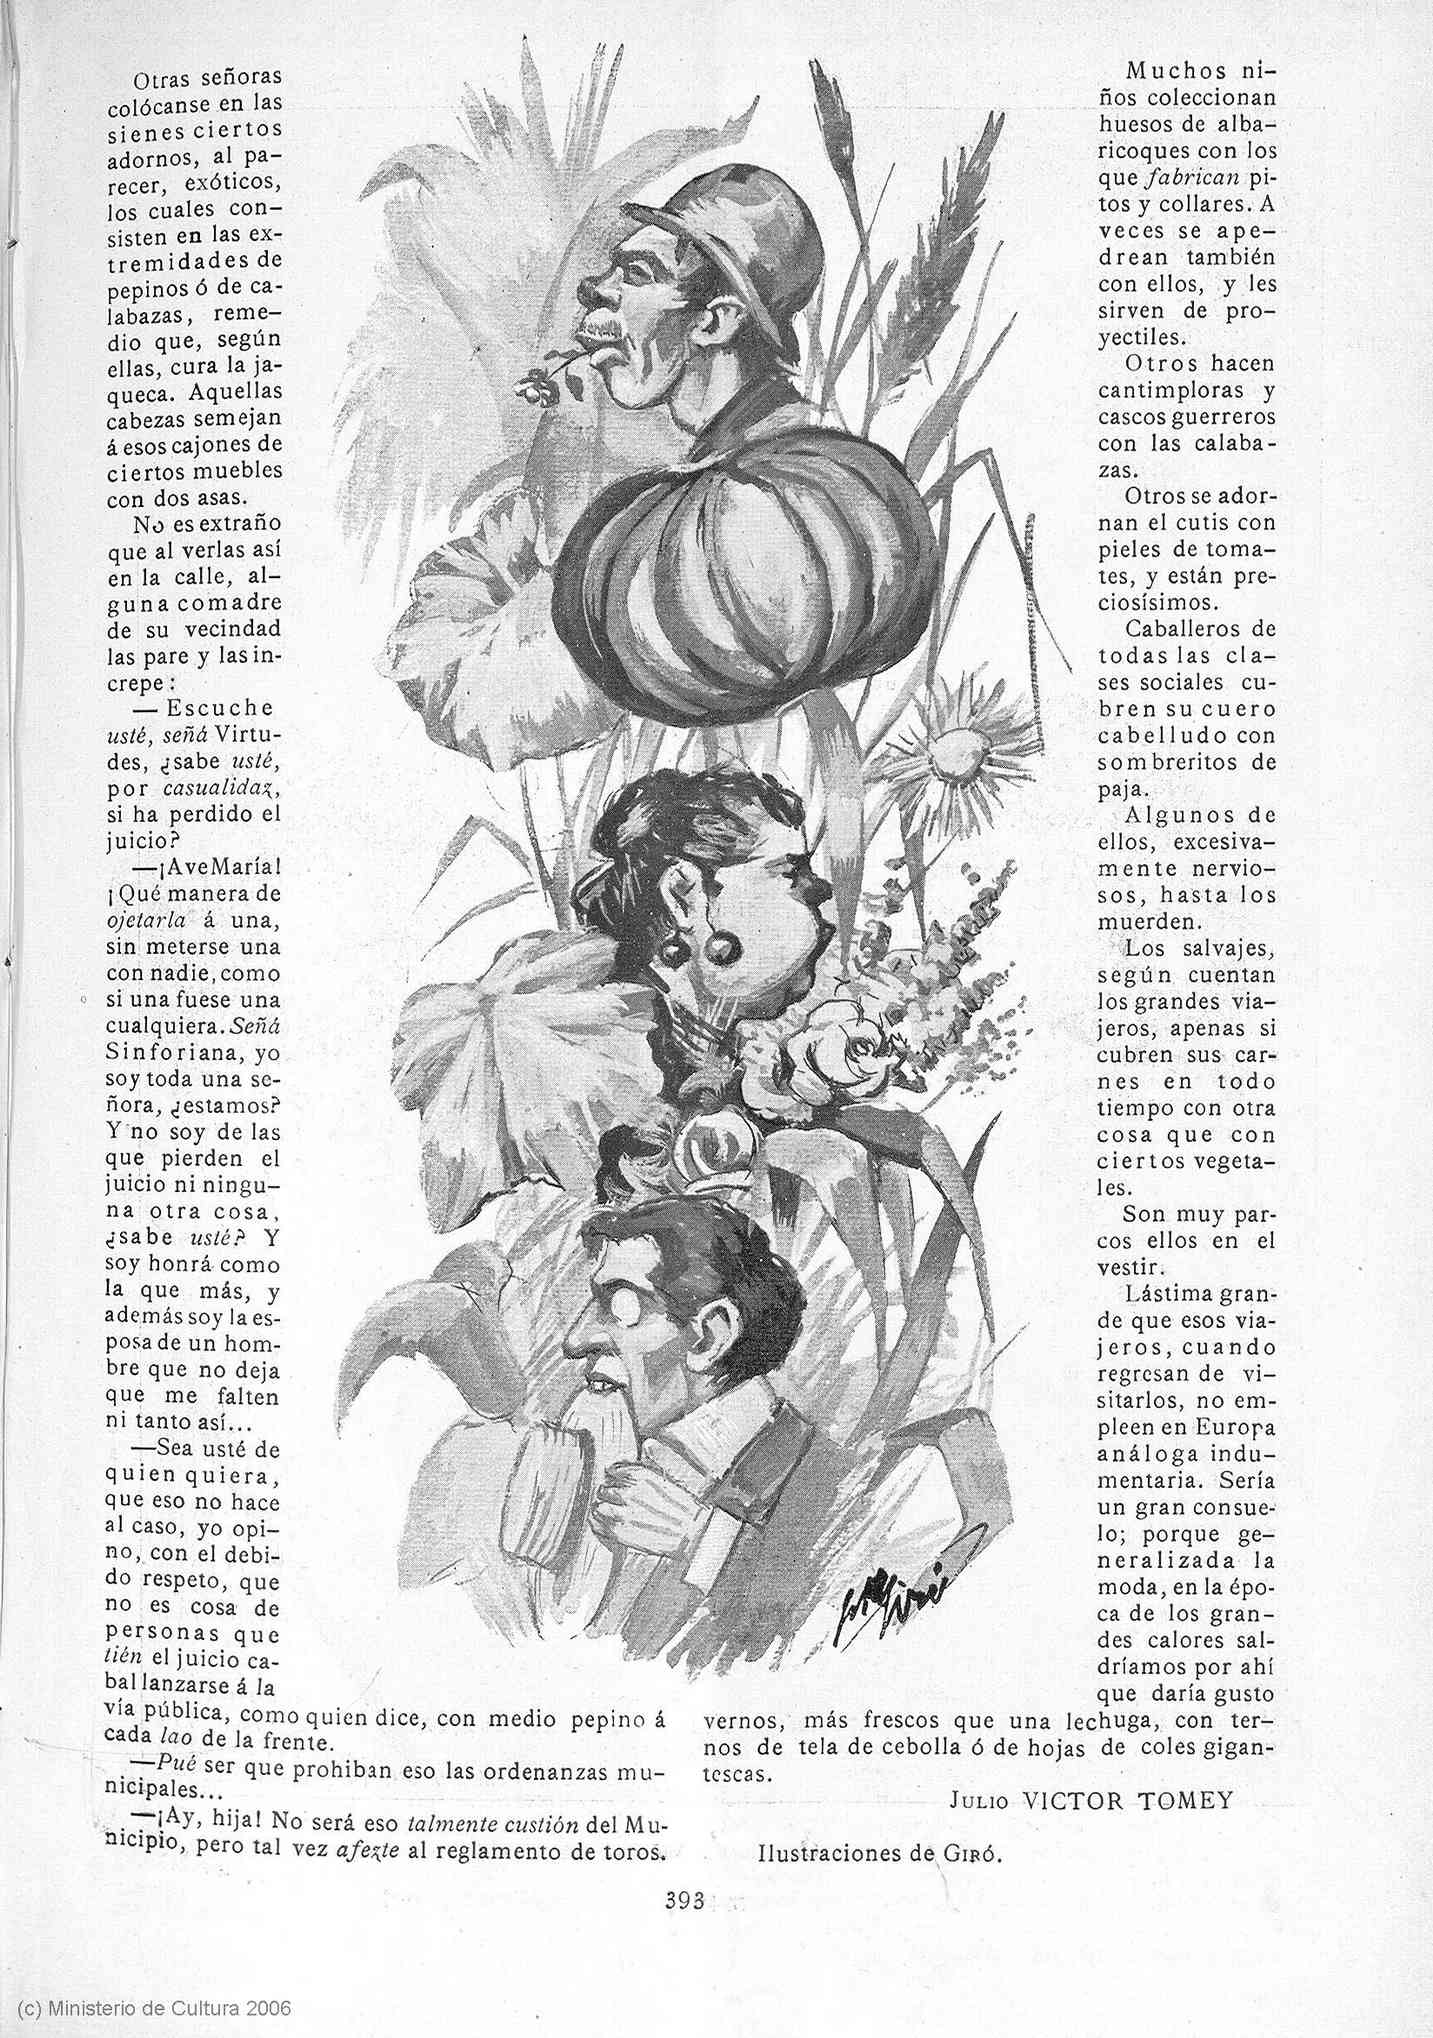 Biblioteca Virtual de Prensa Histórica > Colección iberoamericana > 'Pluma  y lápiz : semanario hispano-americano de literatura y arte' - Número 94  (01/01/100) - Imágenes JPEG